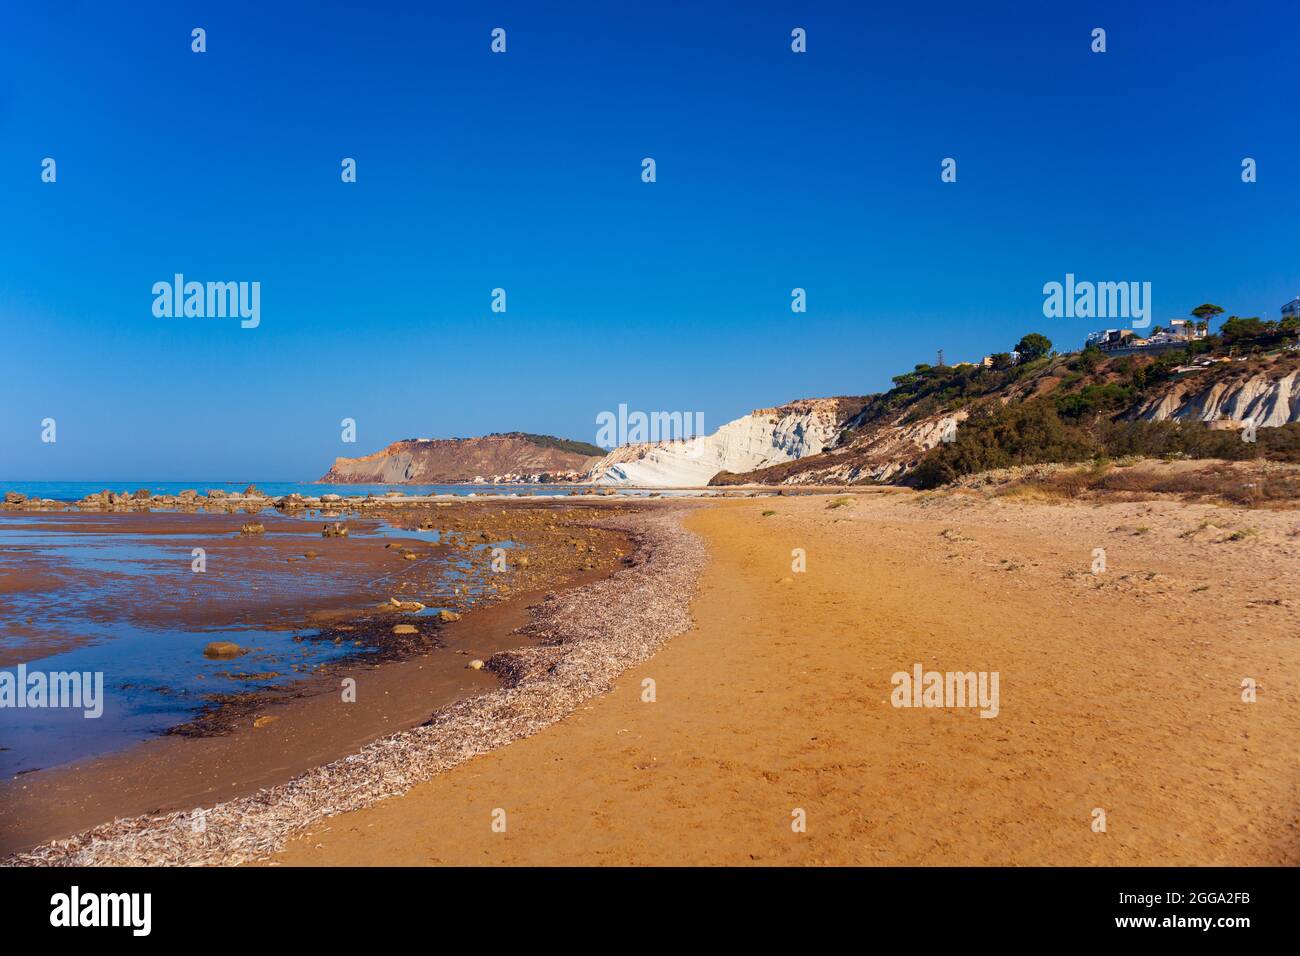 Blick auf die weißen Kalksteinfelsen mit Strand an der Scala dei Turchi in englischer Sprache Türkenstair in der Nähe von Realmonte in der Provinz Agrigento. Sizilien, Ital Stockfoto